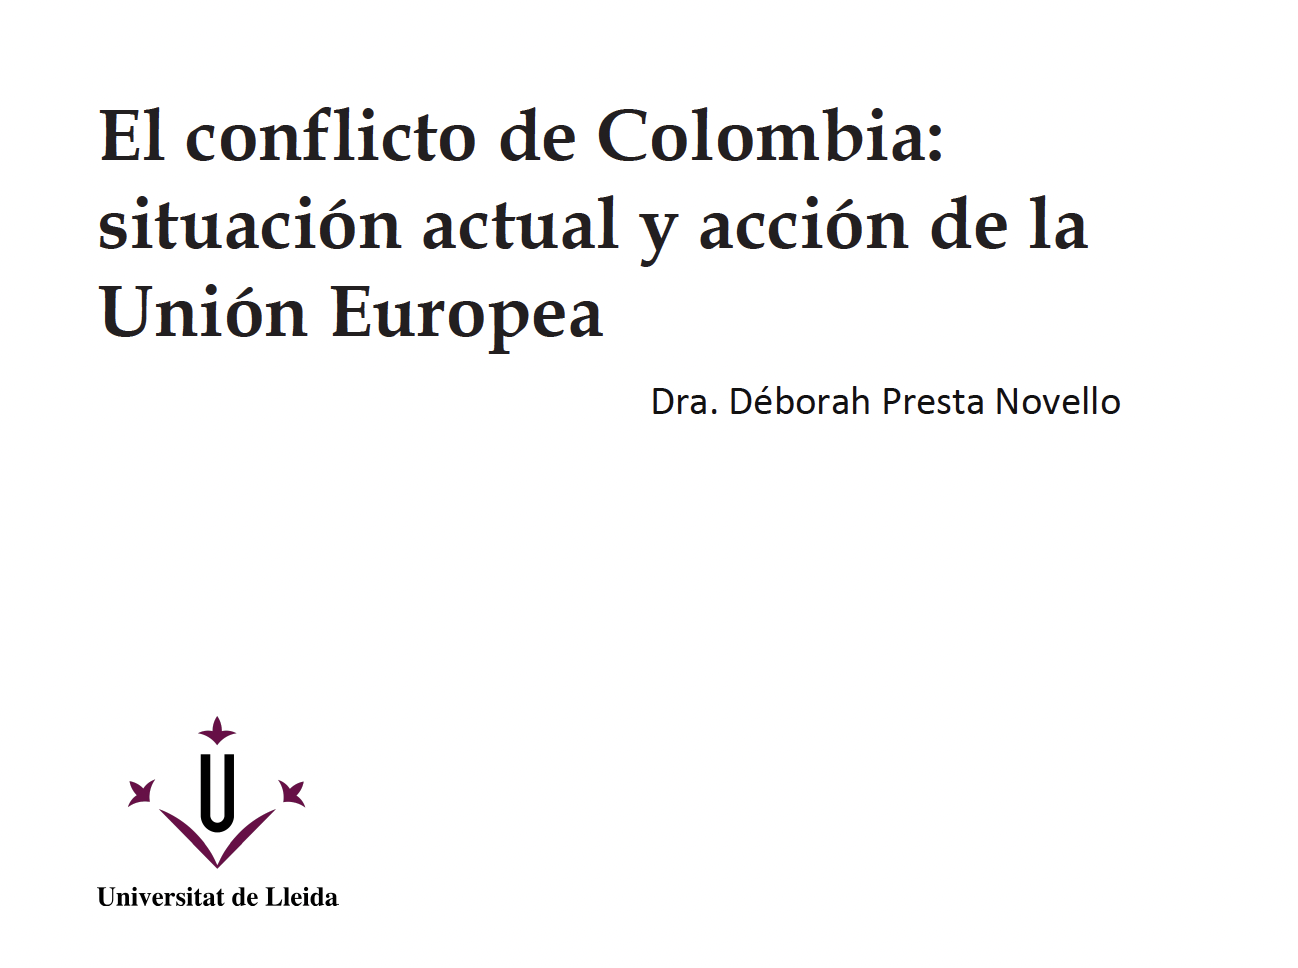 “El conflicto de Colombia: situación actual y acción de la Unión Europea”